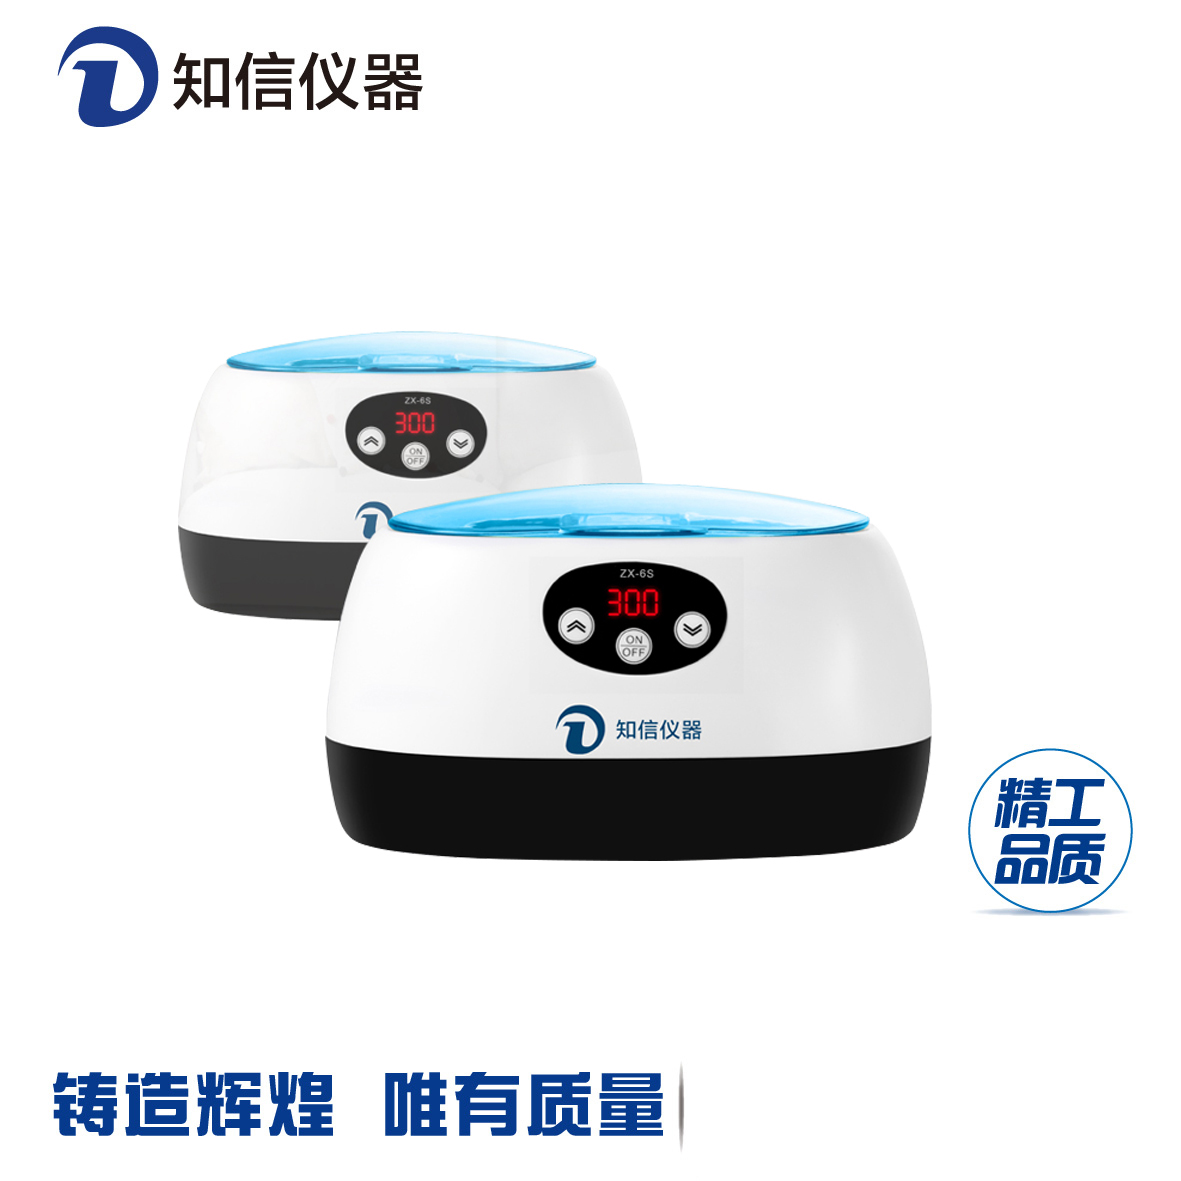 嘉兴市小型超声波清洗机厂家上海知信ZX-6S小型超声波清洗机 眼镜首饰迷你家用超声波清洗仪器